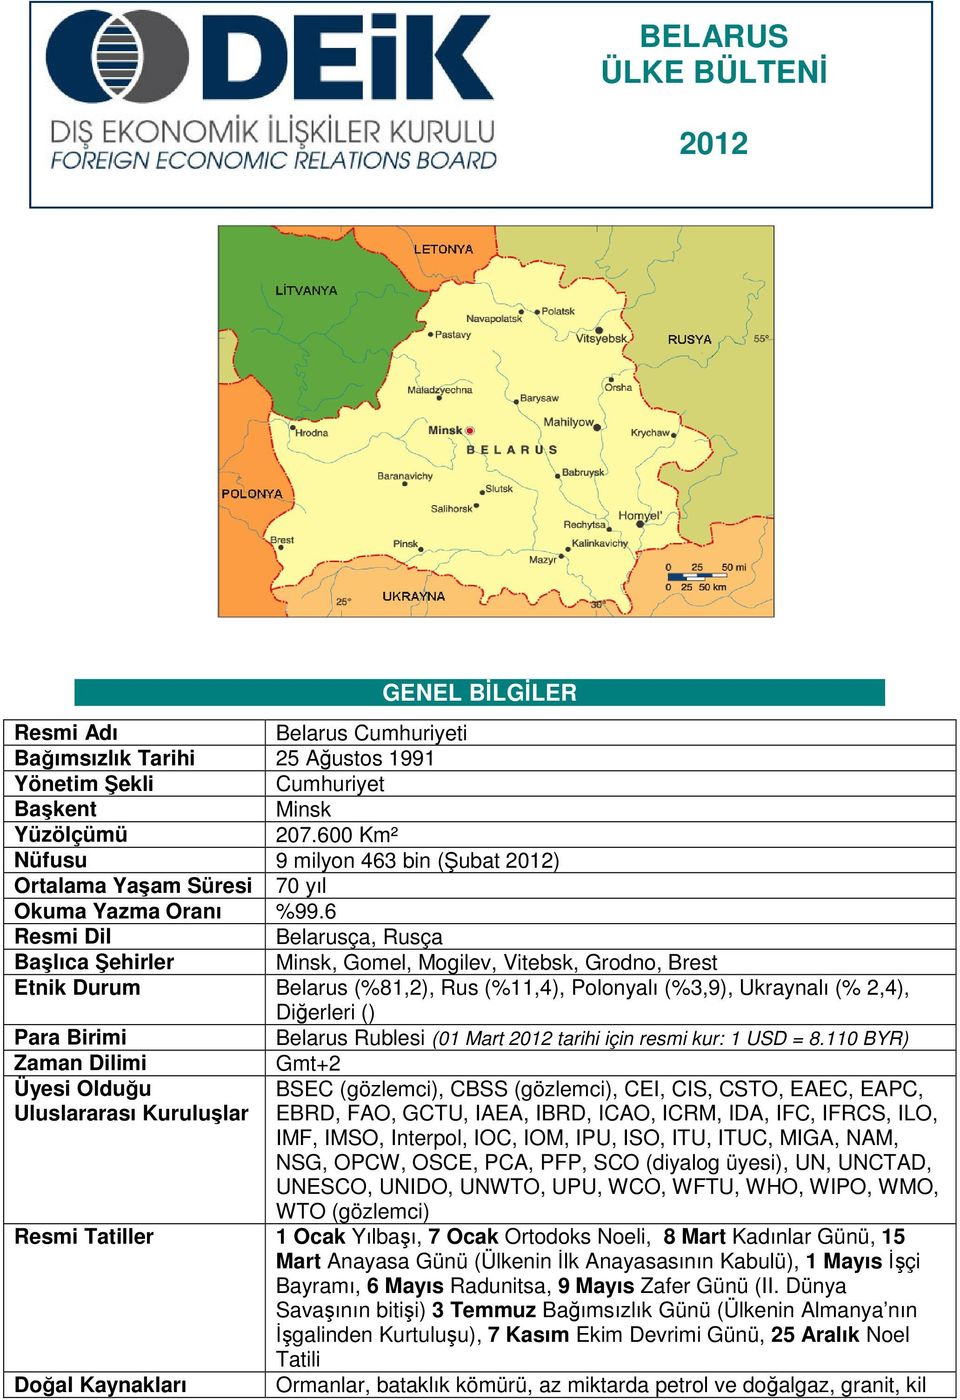 6 Resmi Dil Belarusça, Rusça Başlıca Şehirler Minsk, Gomel, Mogilev, Vitebsk, Grodno, Brest Etnik Durum Belarus (%81,2), Rus (%11,4), Polonyalı (%3,9), Ukraynalı (% 2,4), Diğerleri () Para Birimi